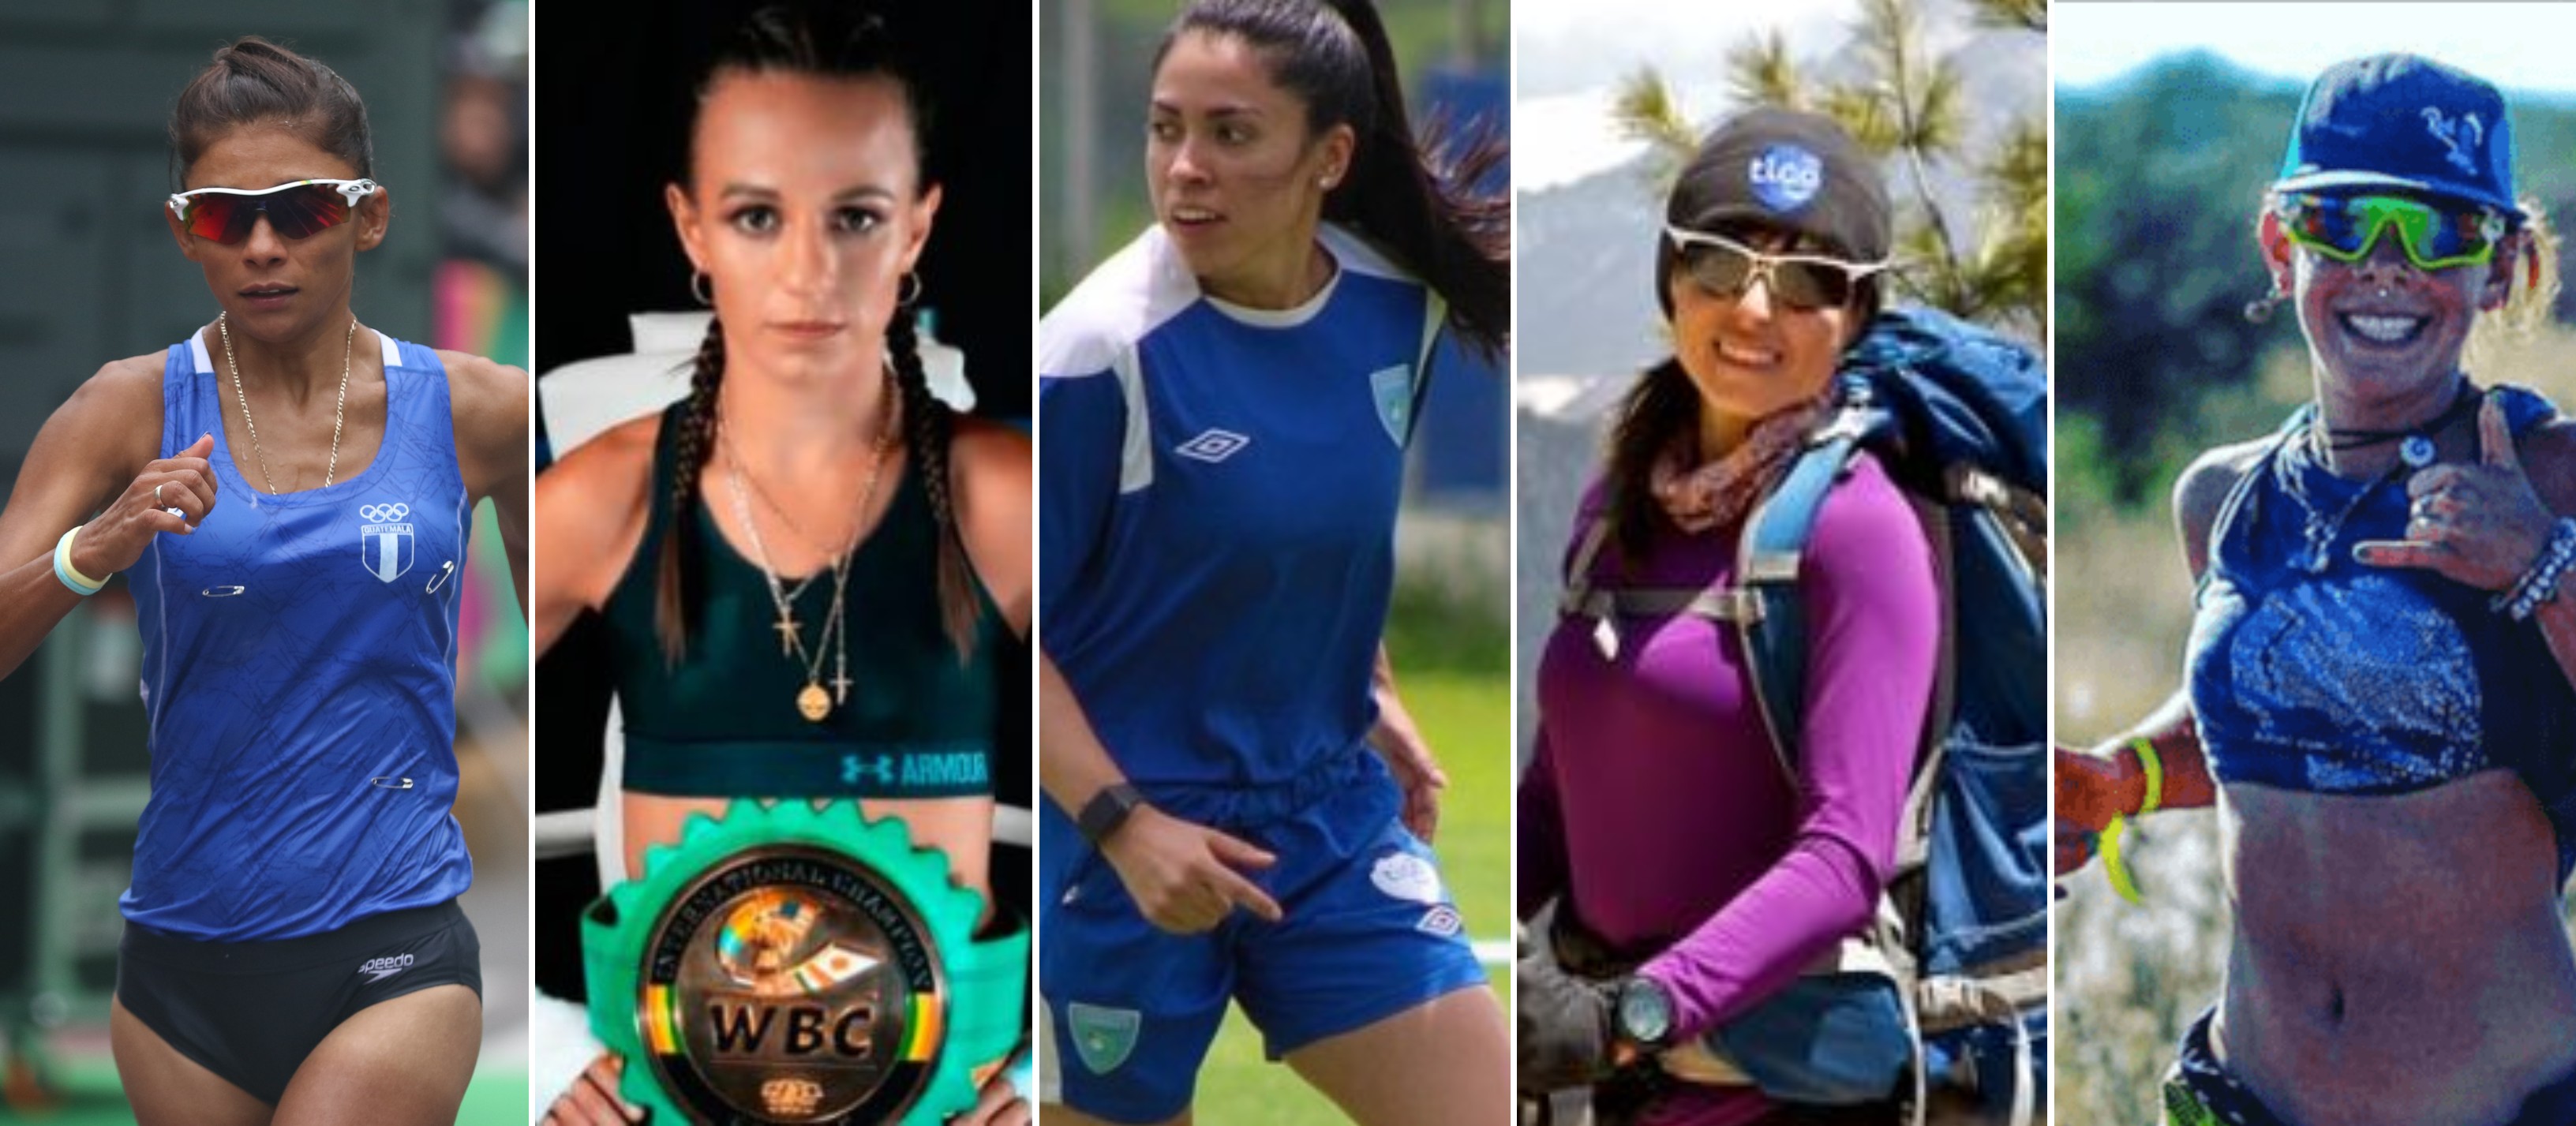 Mirna Ortiz, María Micheo, Ana Martínez, Andrea Cardona y Michelle Echeverría son cinco deportistas incluidas en la lista Robes de las 100 mujeres más poderosas. Foto Prensa Libre: Hemeroteca PL.